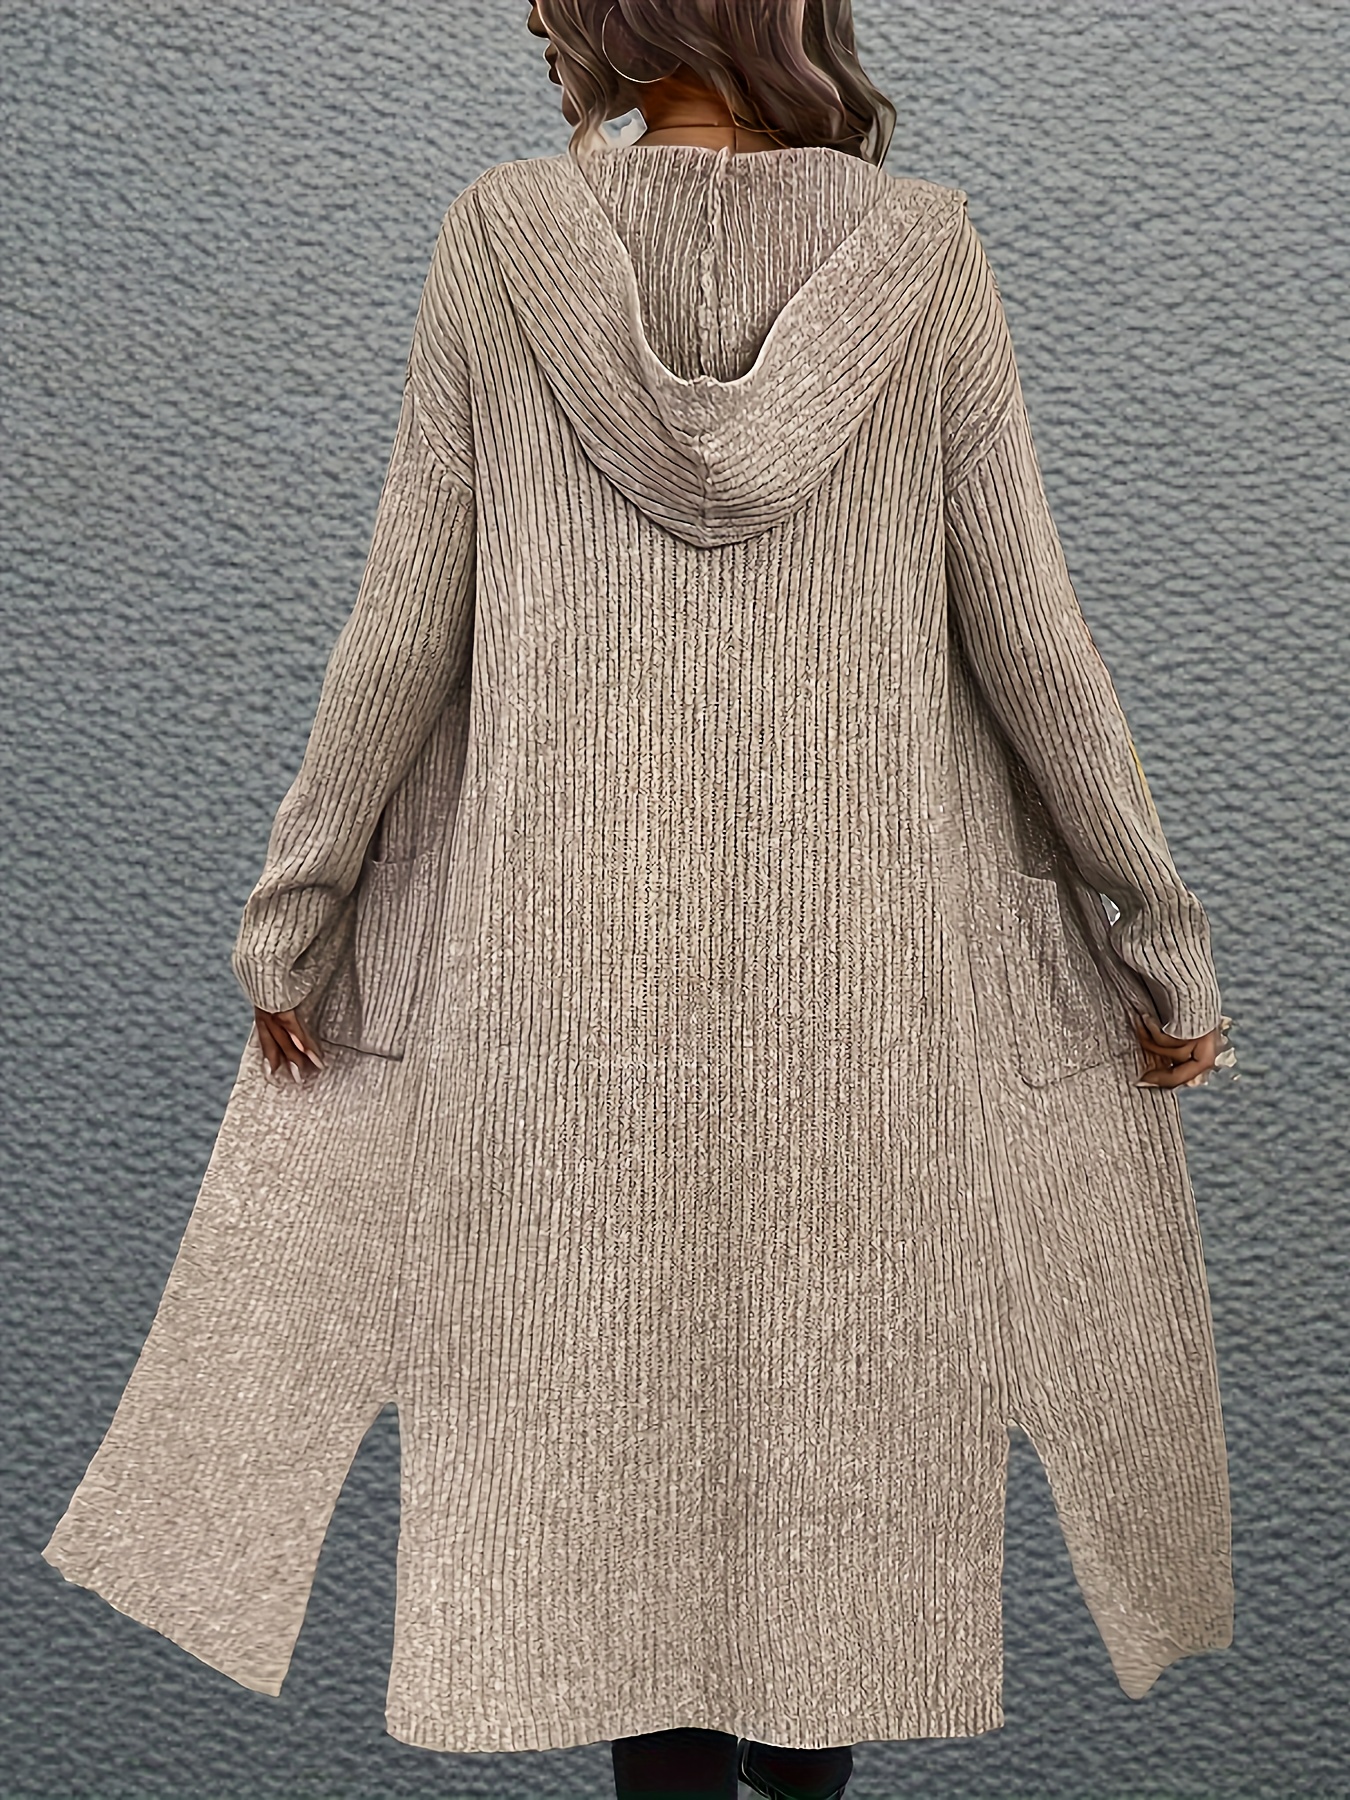 Women Sweater Hoodie Knitted Coat Jacket Cardigan Outwear Long